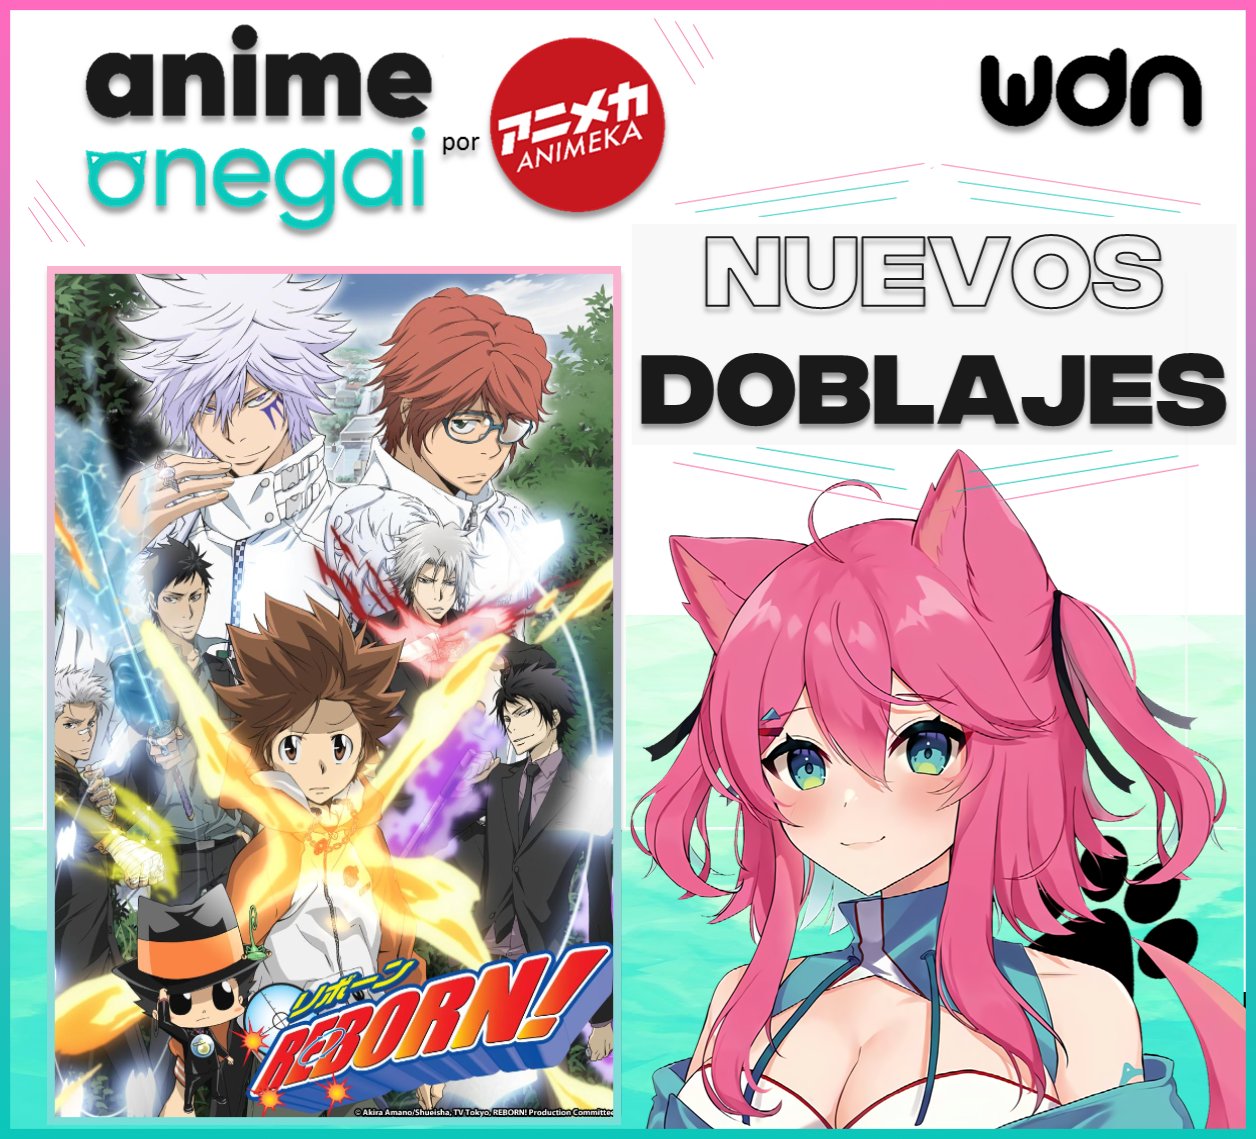 Personagens Com os Mesmos Dubladores! on X: 🚨 Animes dublados da Anime  Onegai provavelmente vindo aí! 🚨 O streaming Anime Onegai anunciou numa  live que irá distribuir dublagens brasileiras de seus animes